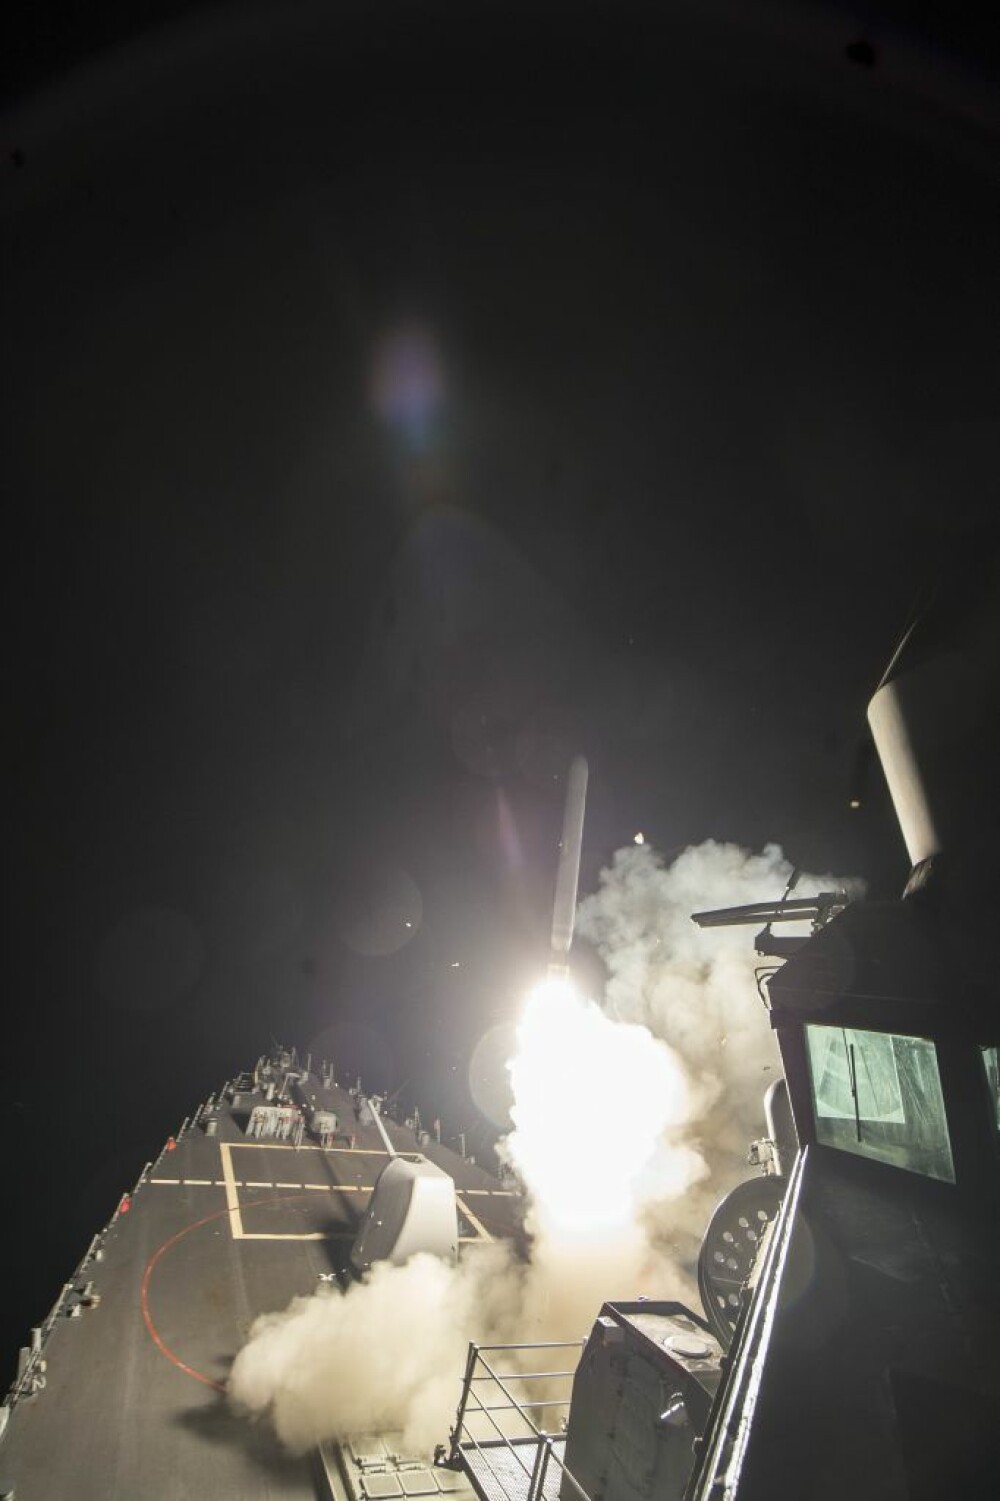 SUA au atacat Siria cu rachete. Discutii aprinse la Consiliul de Securitate al ONU: Rusia a avertizat asupra consecintelor - Imaginea 2